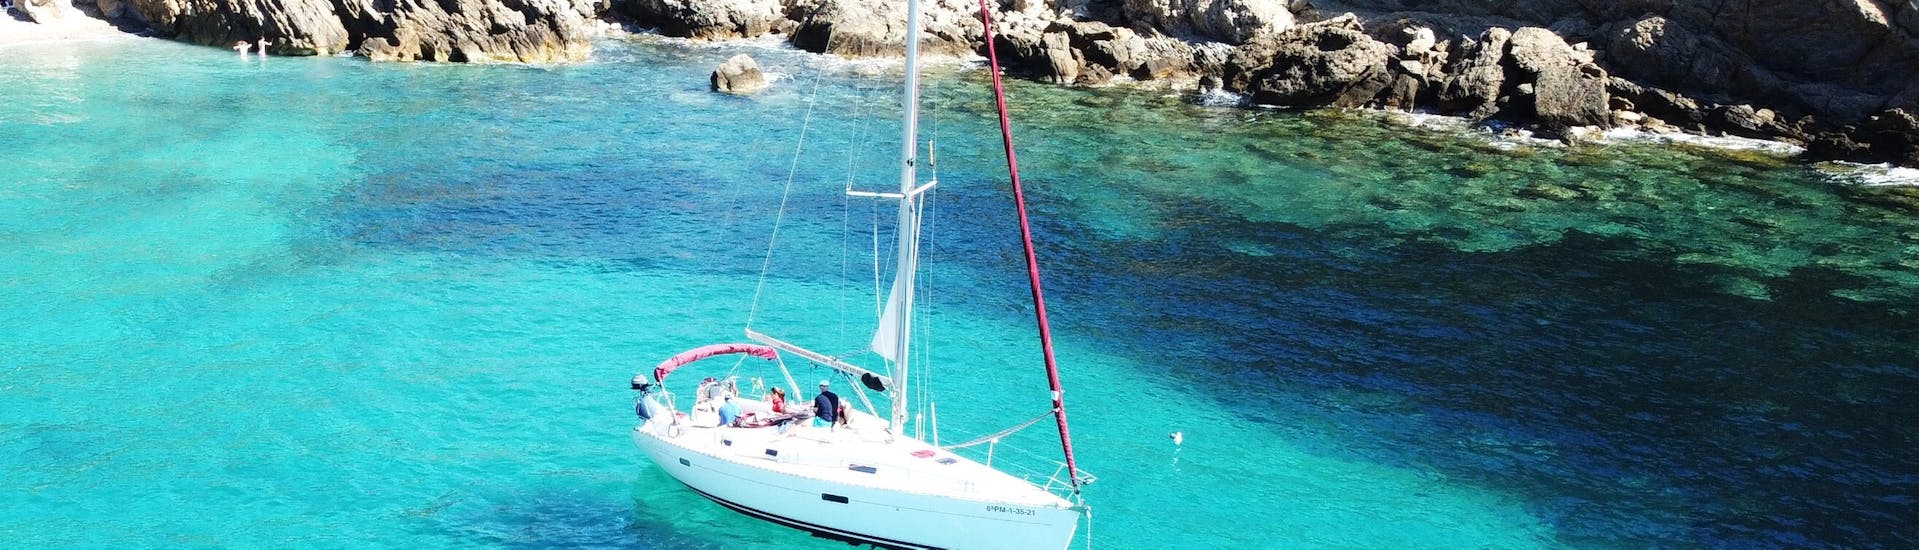 Nuestro barco navega por el agua durante la Excursión Privada en Barco de Día Completo en Mallorca desde Port d'Andratx con Pura Vida Sailing Mallorca.